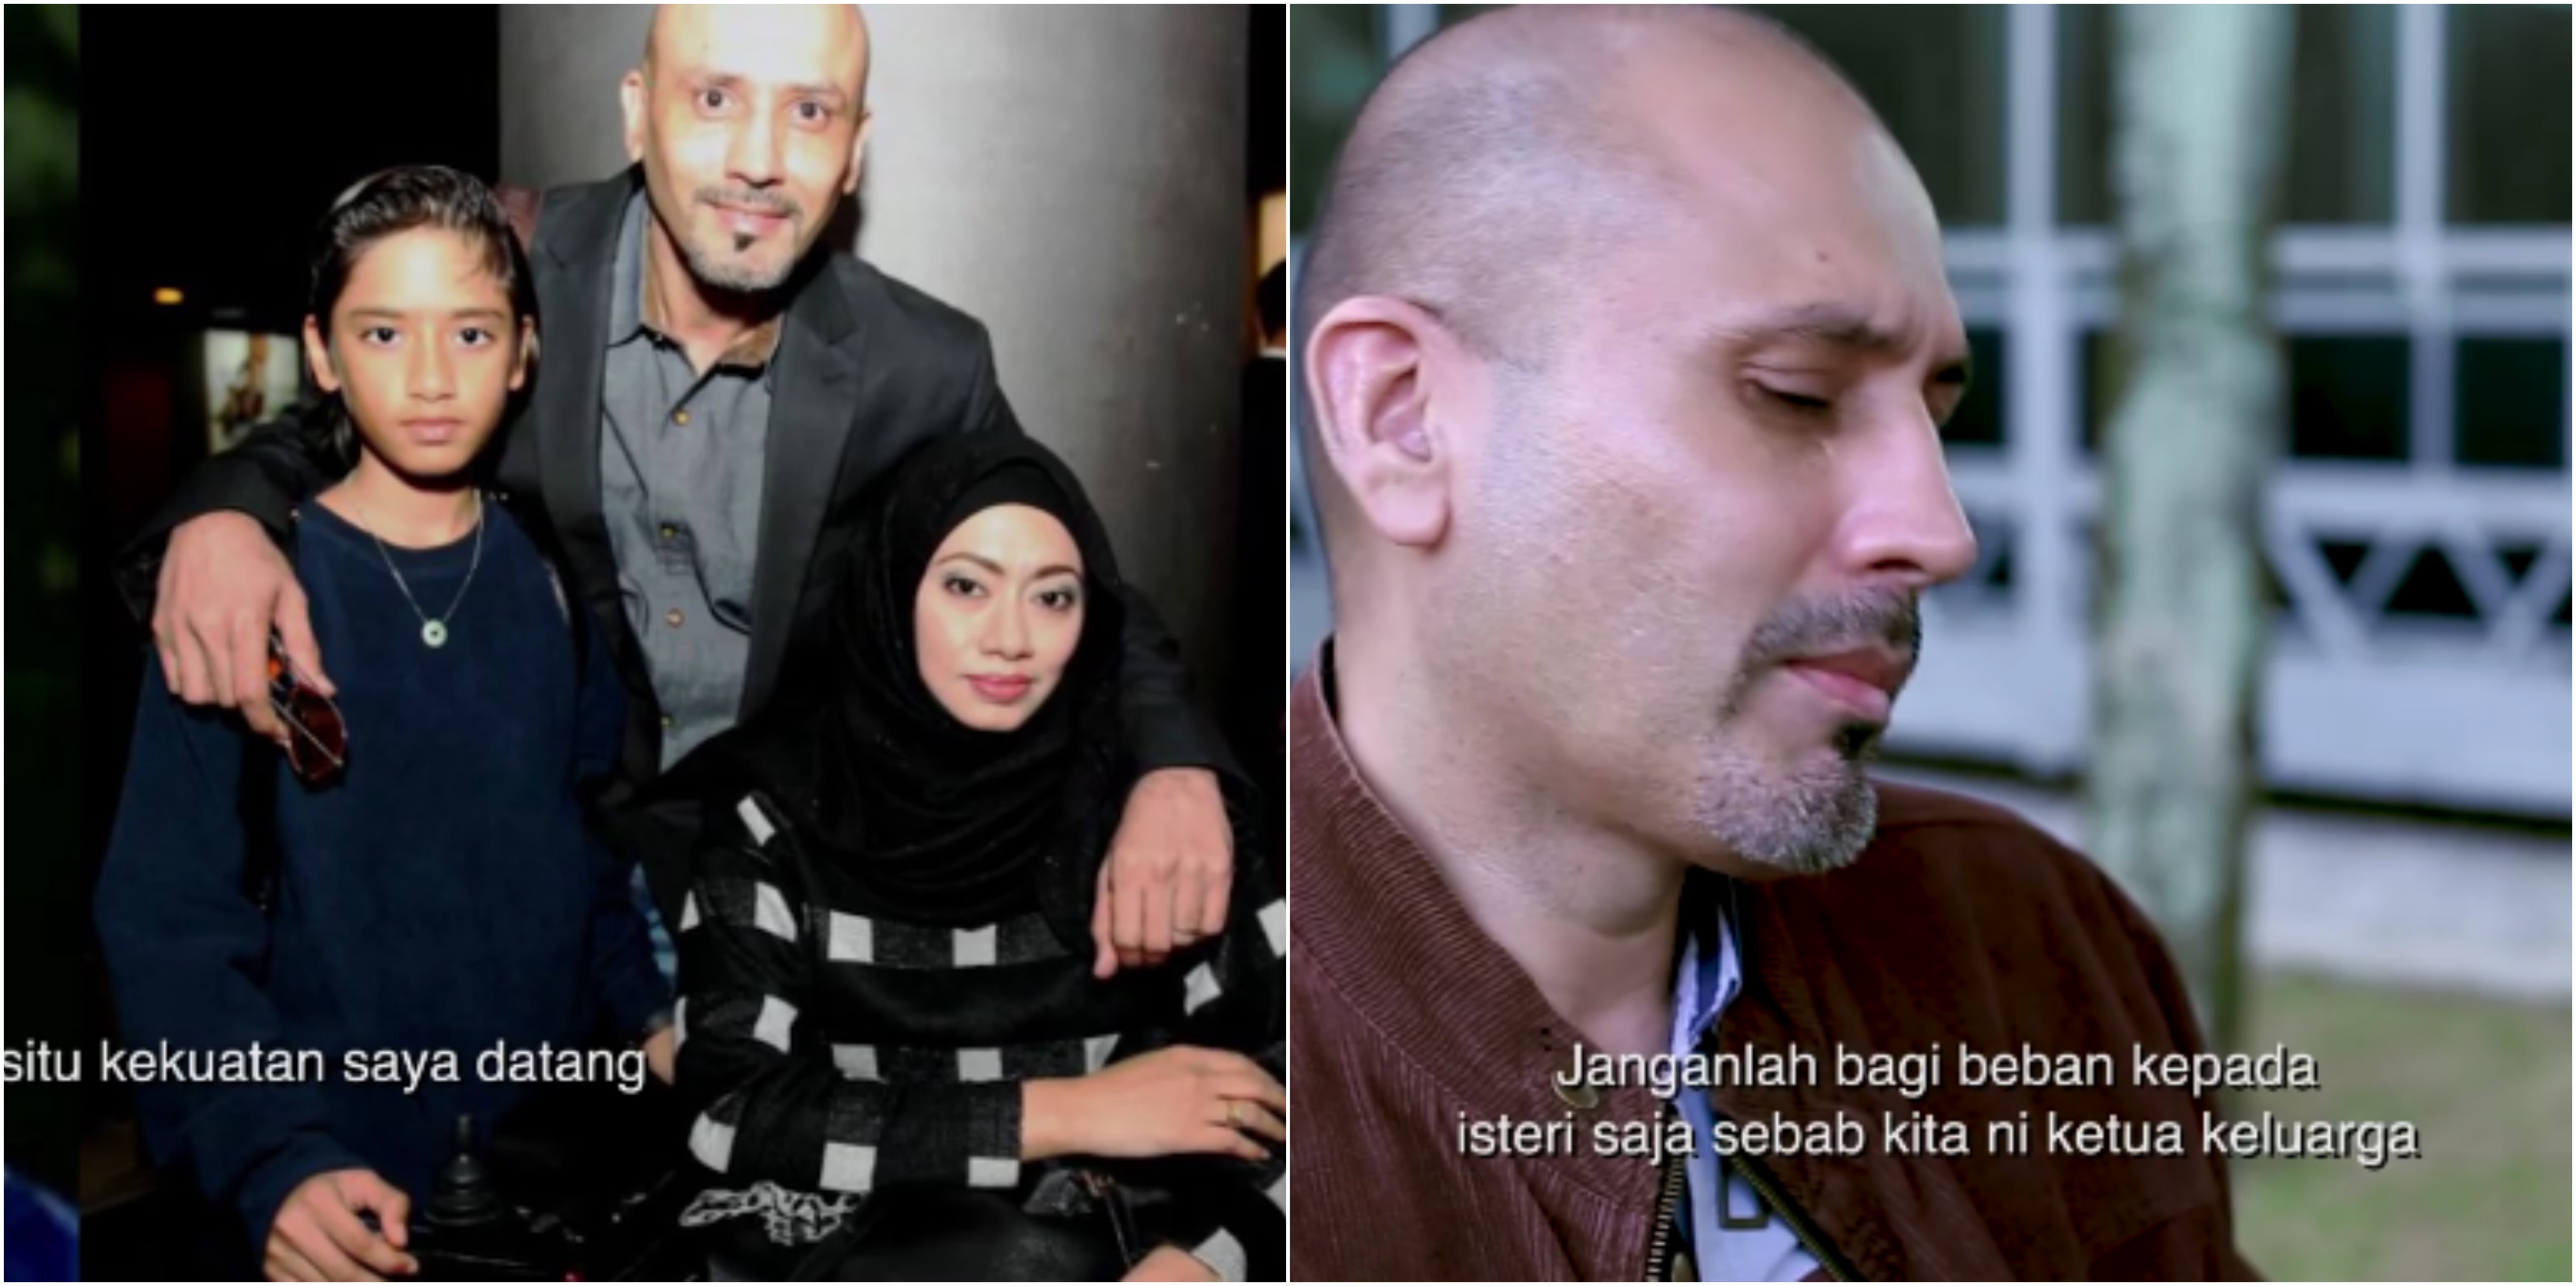 [VIDEO] 12 Tahun Jaga Isteri Lumpuh, Perkongsian Edika Yusof Buat Ramai Netizen Sebak!